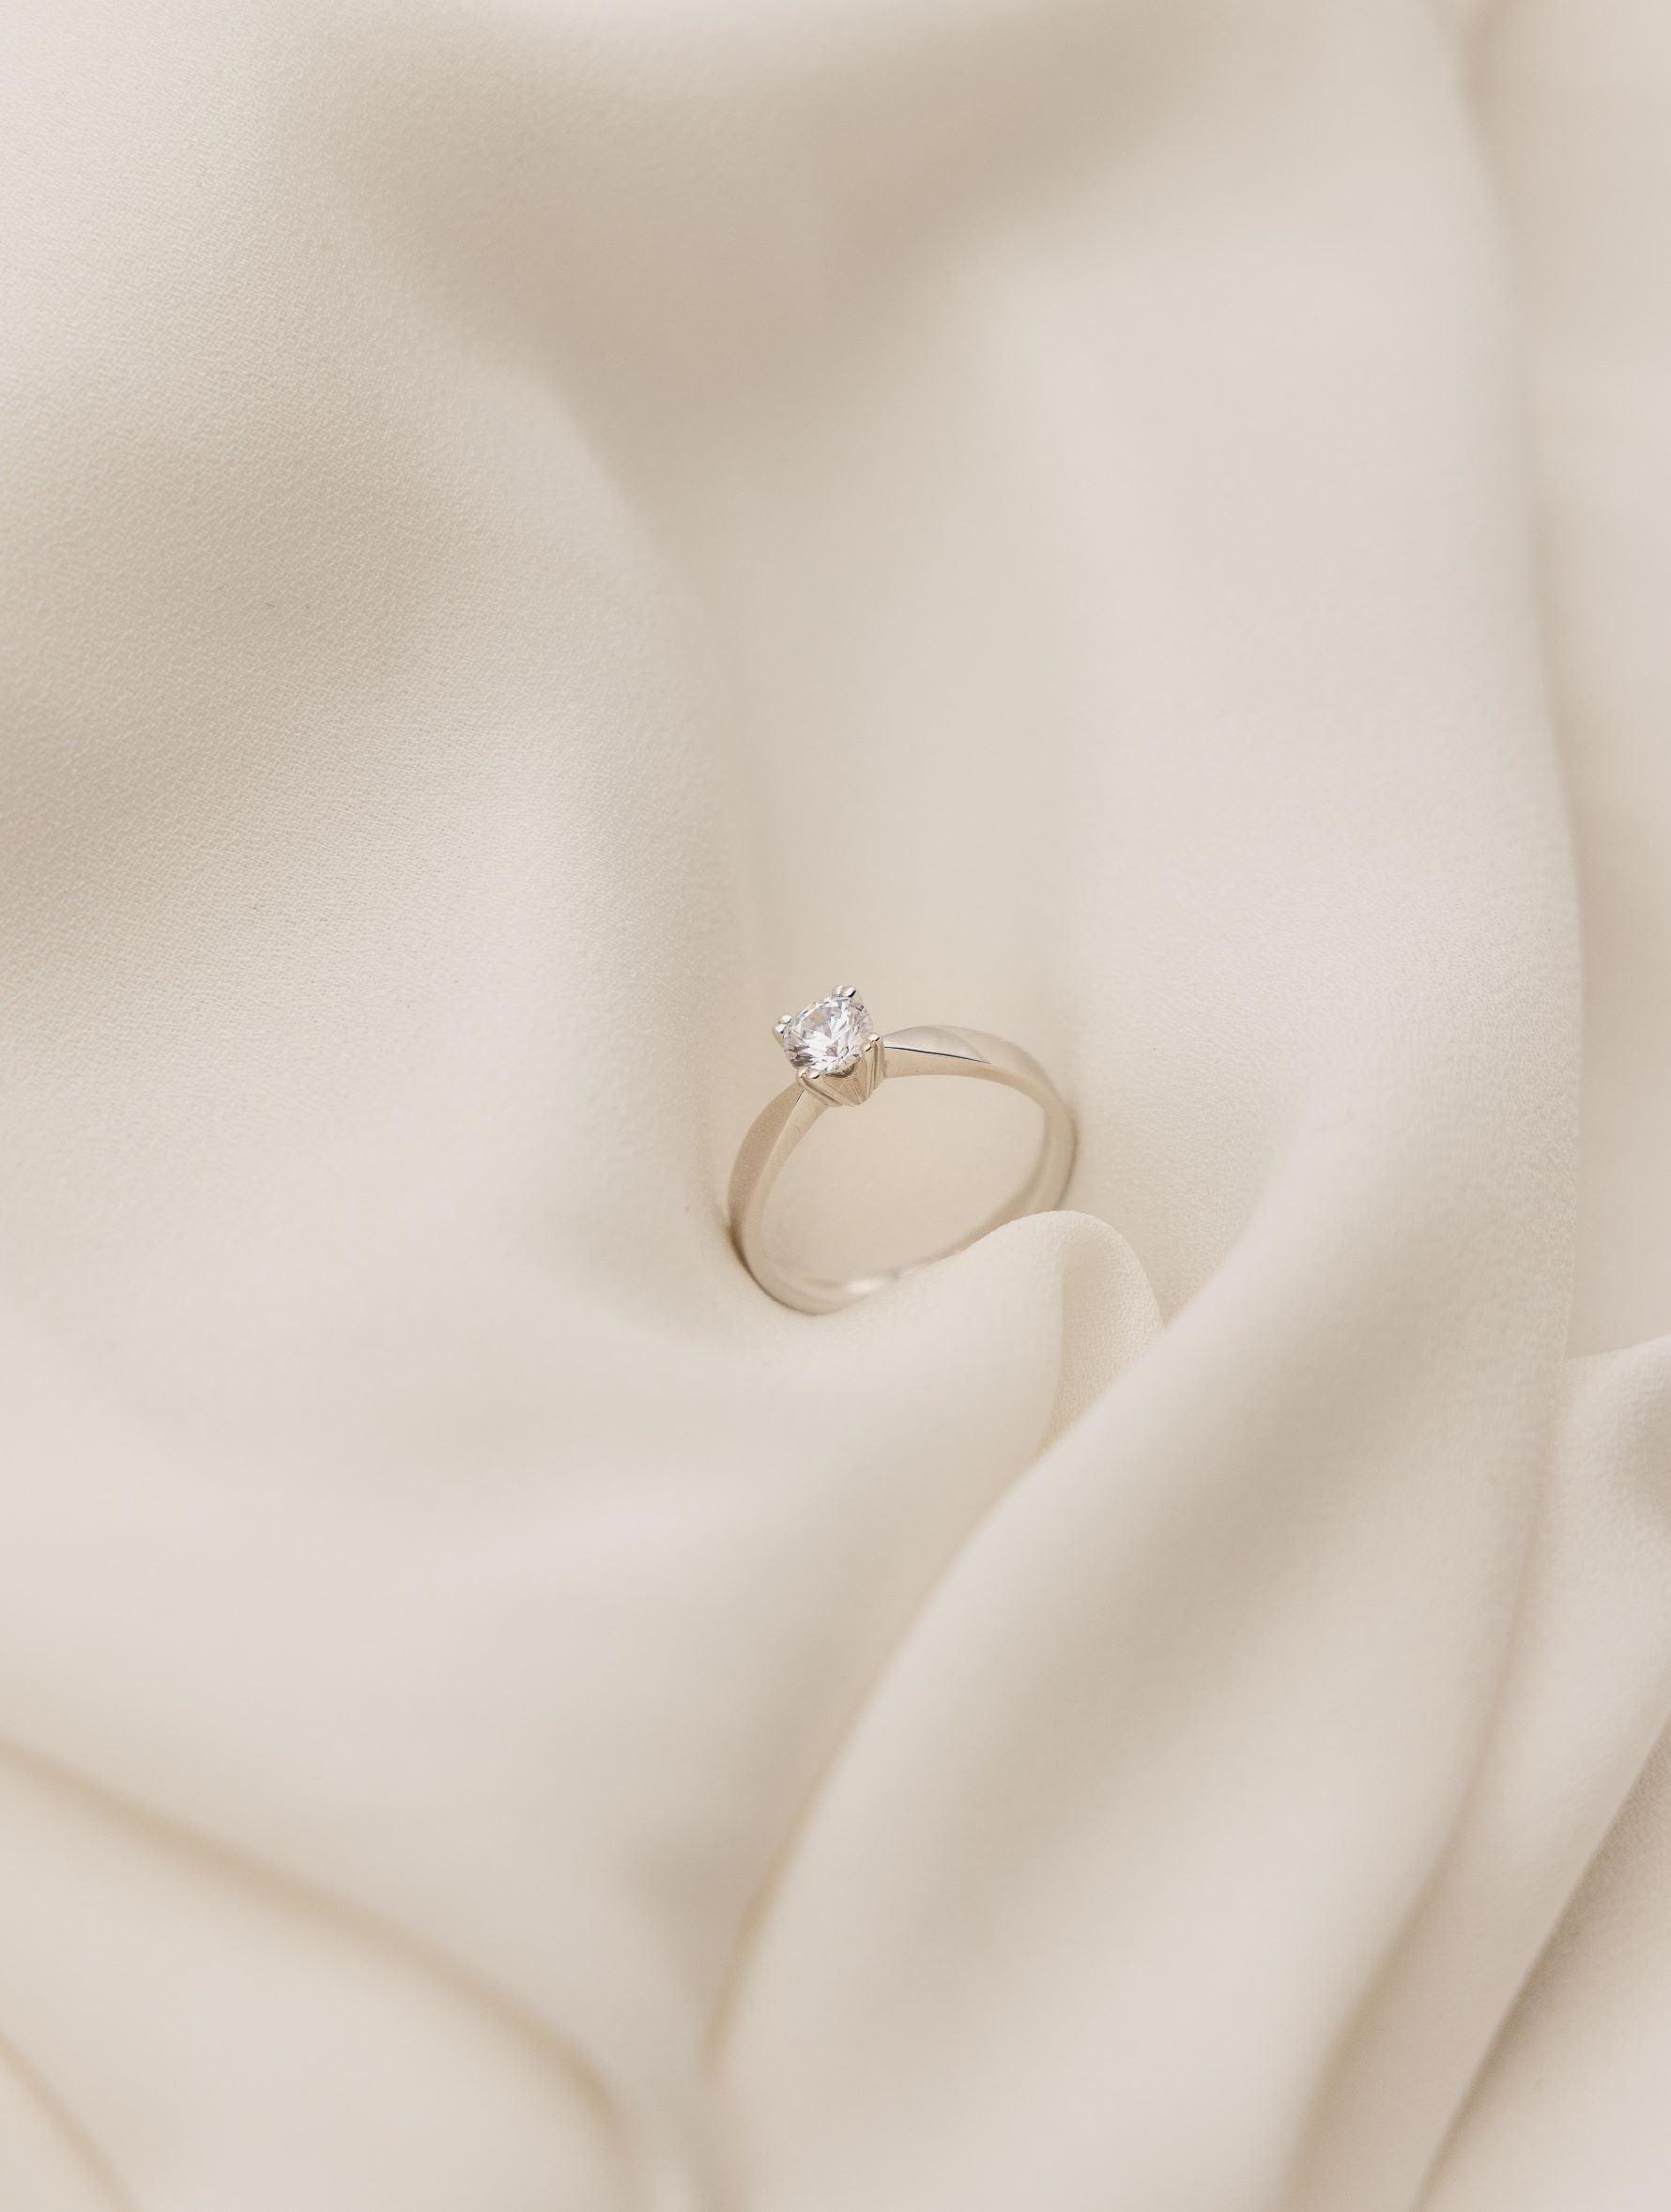 Λευκόχρυσο μονόπετρο δαχτυλίδι με διαμάντι και καστόνι σε σχήμα "V", επάνω σε λευκό μετάξι.